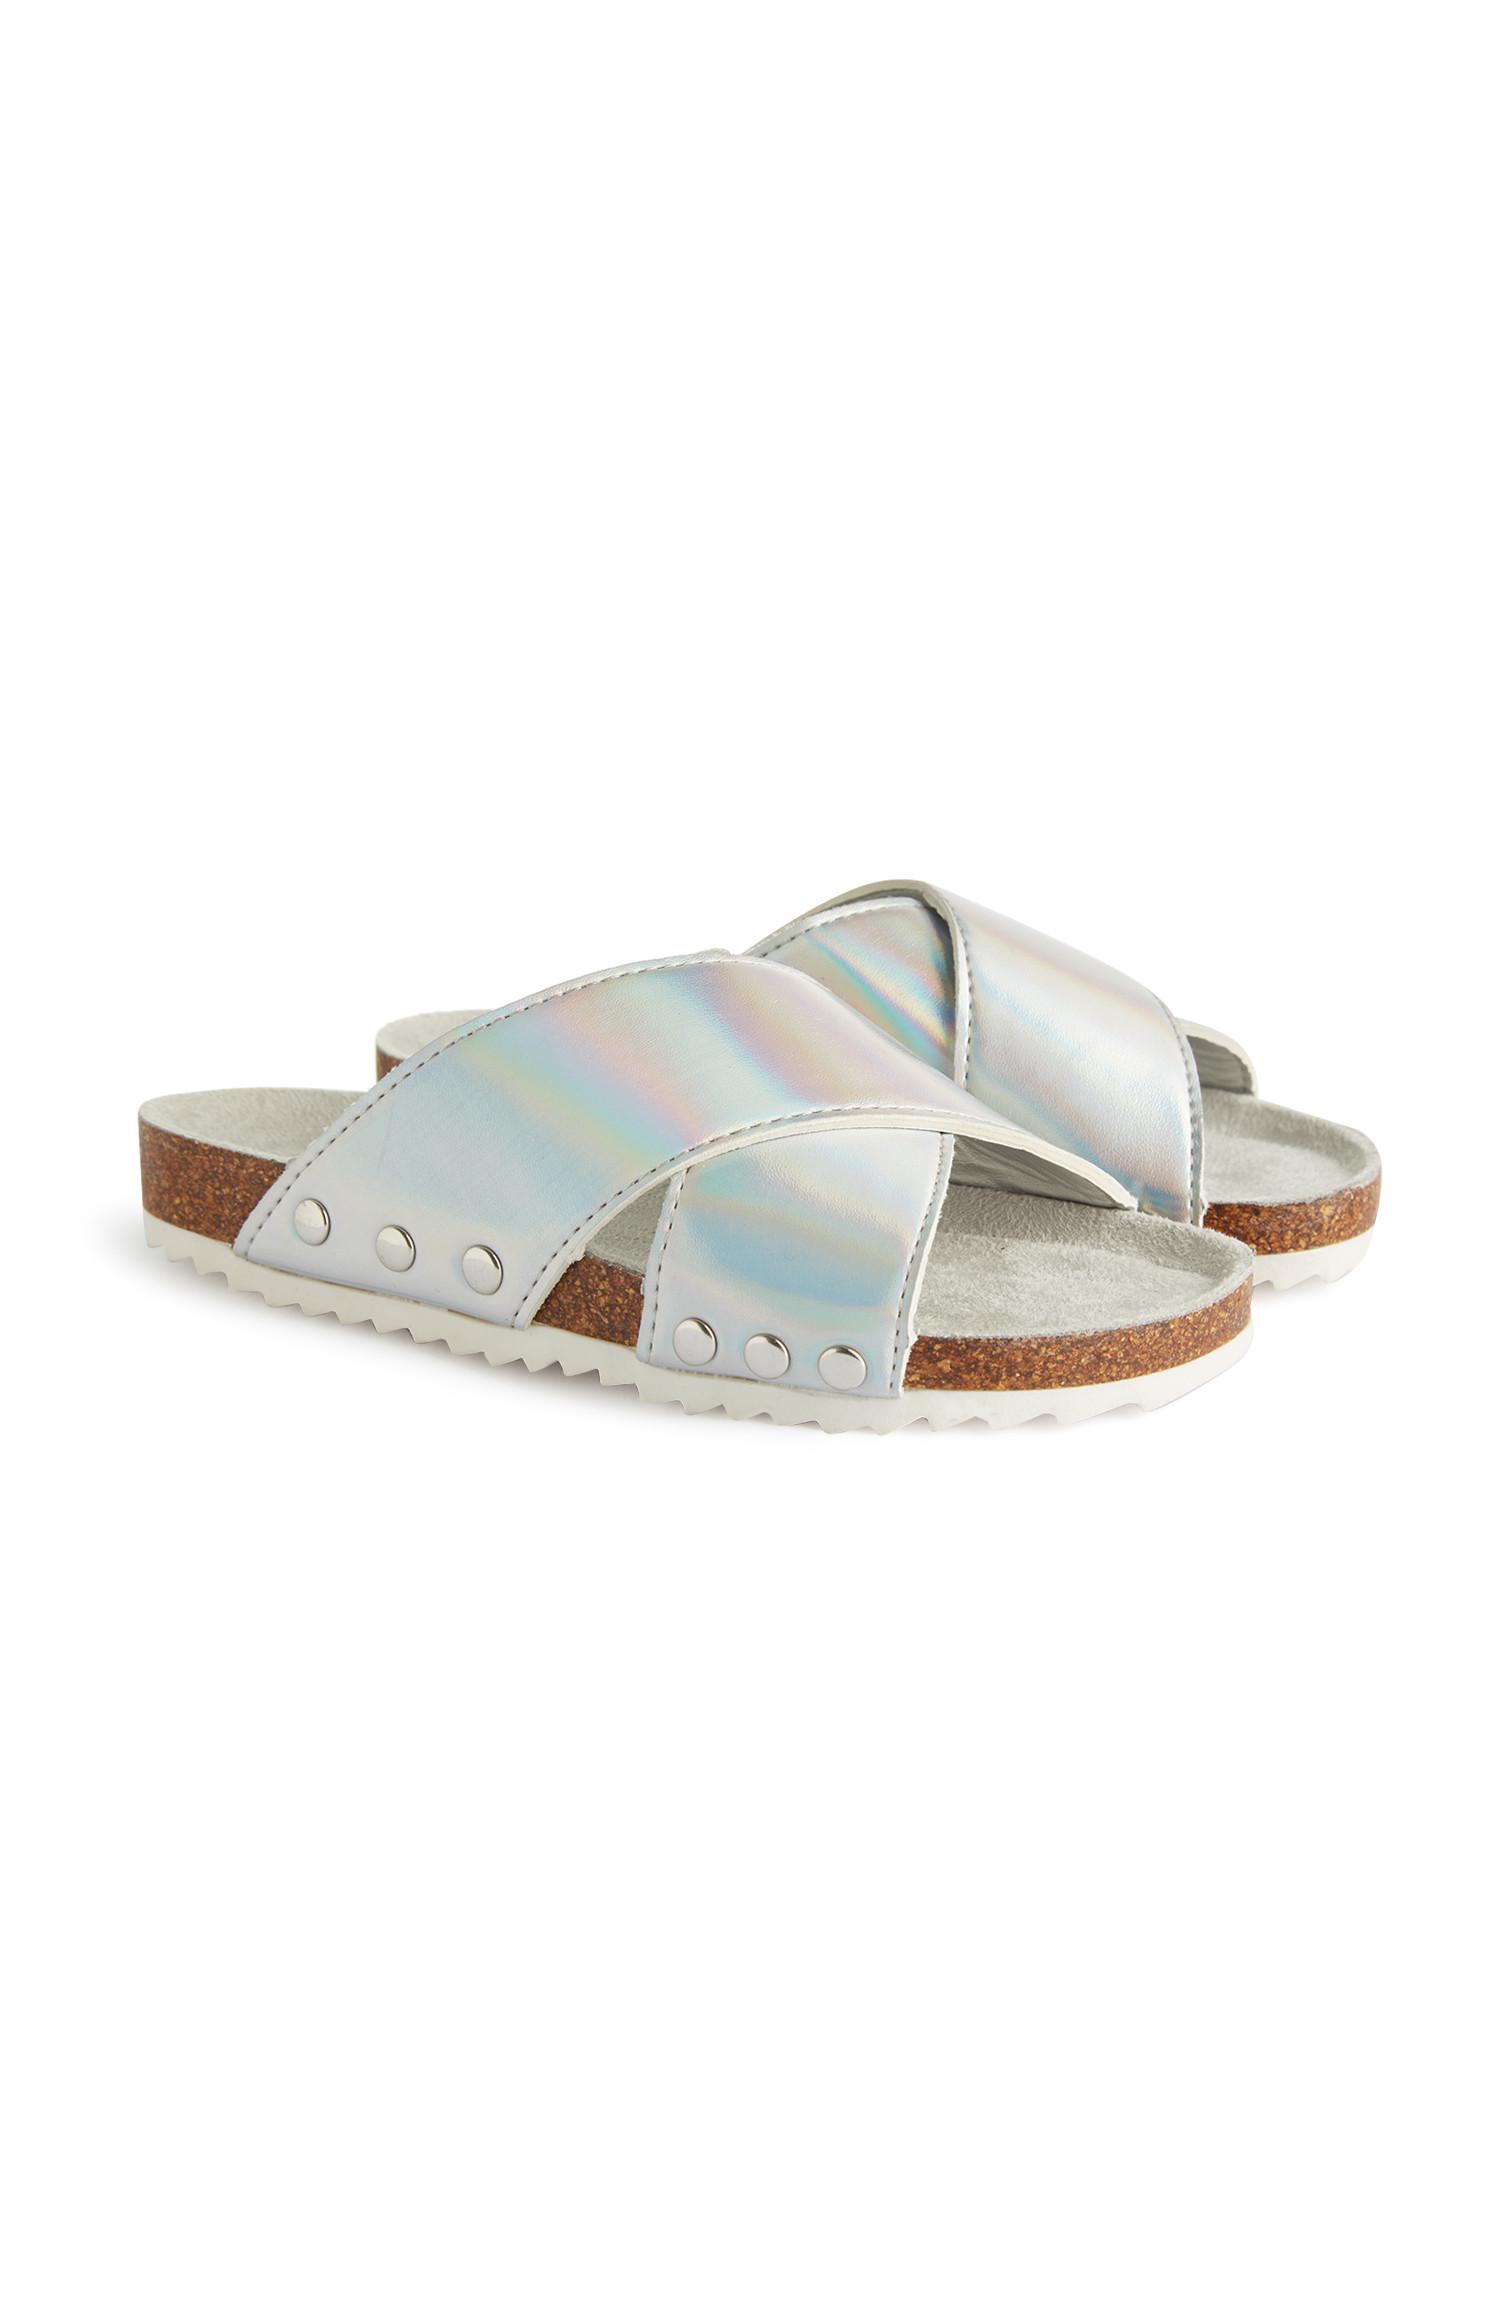 primark sparkly sandals